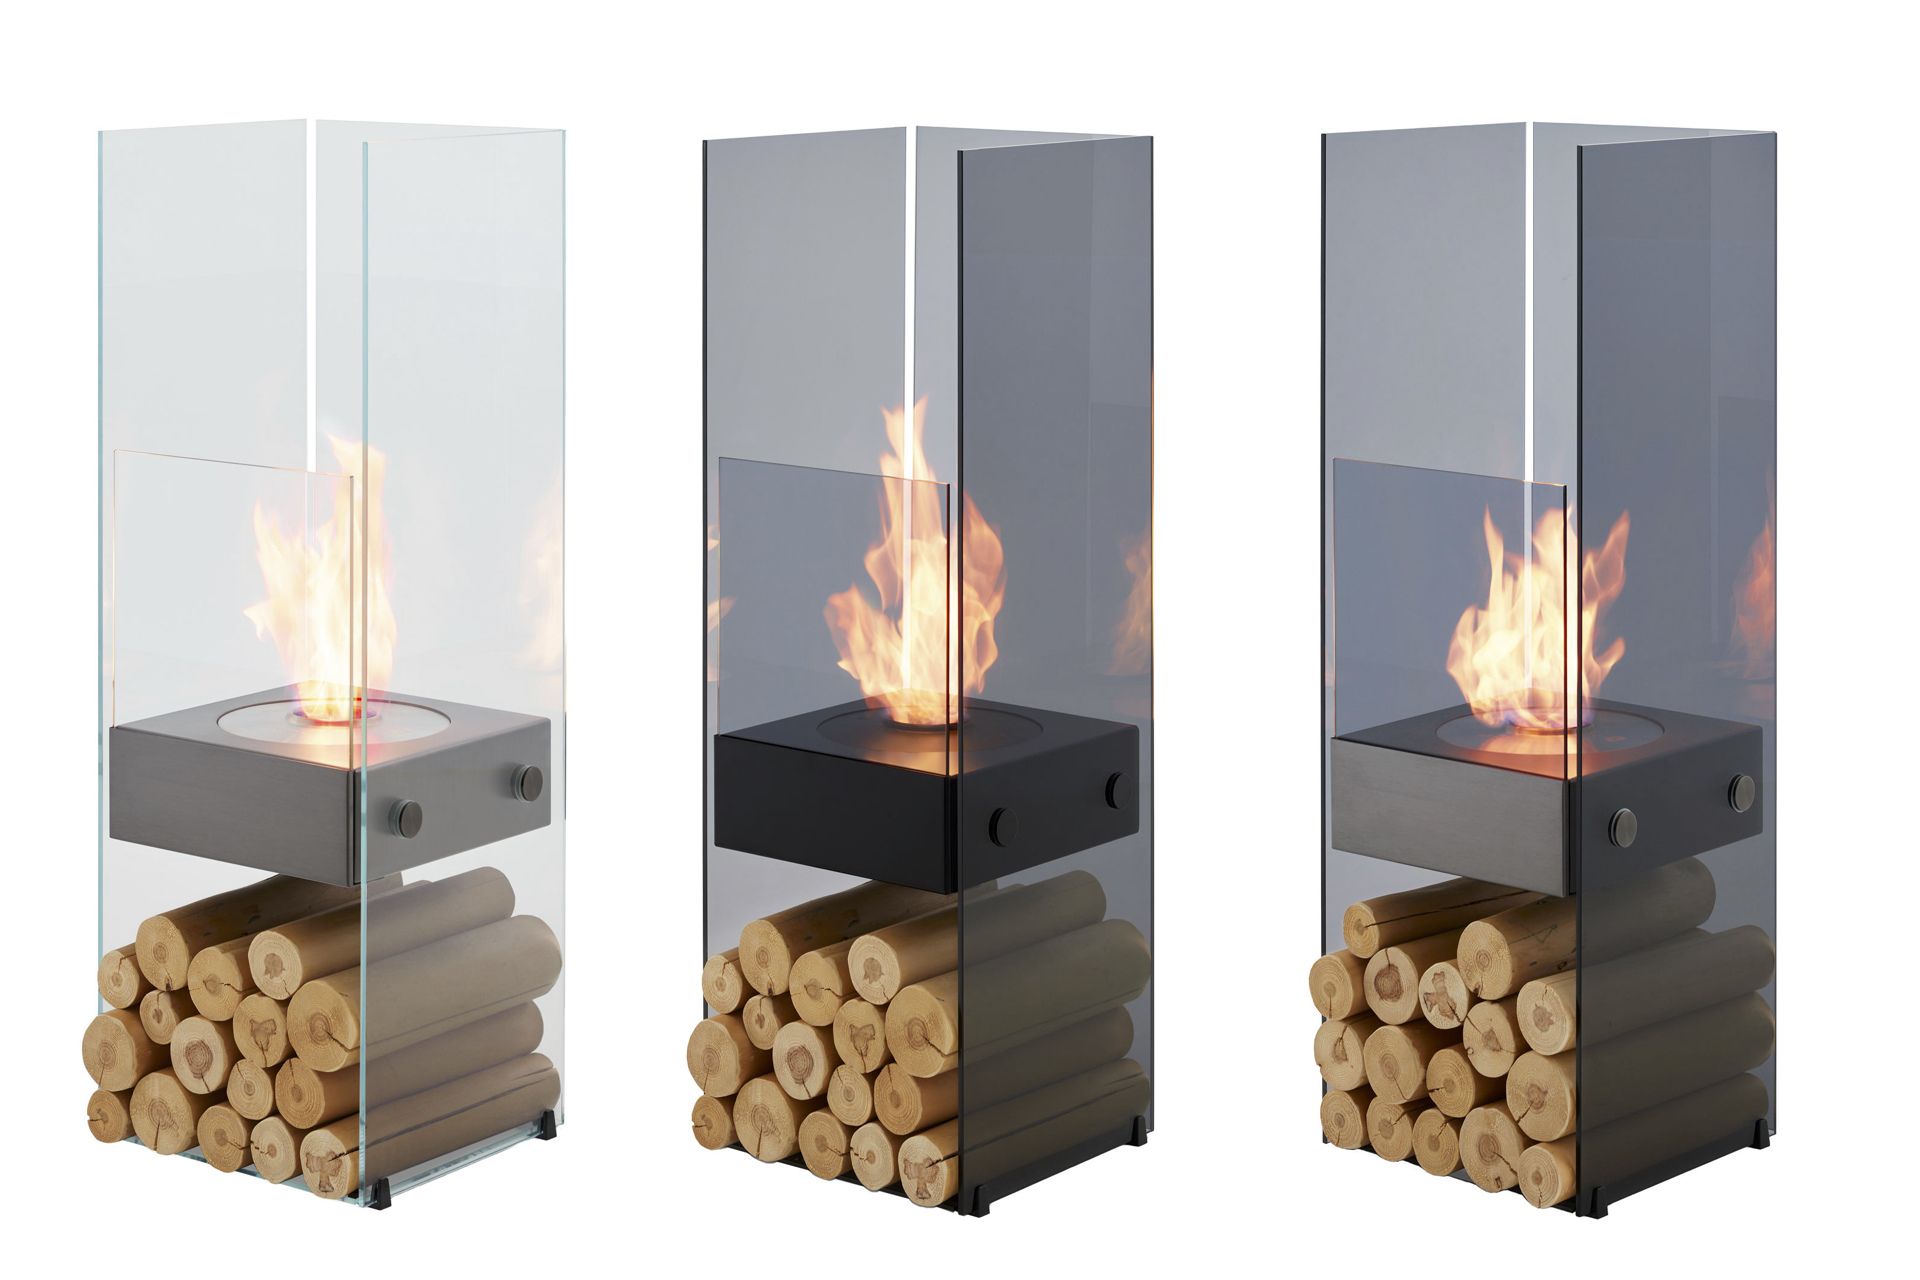 住空間を彩るバイオエタノール暖炉「エコスマートファイヤー」の新作で